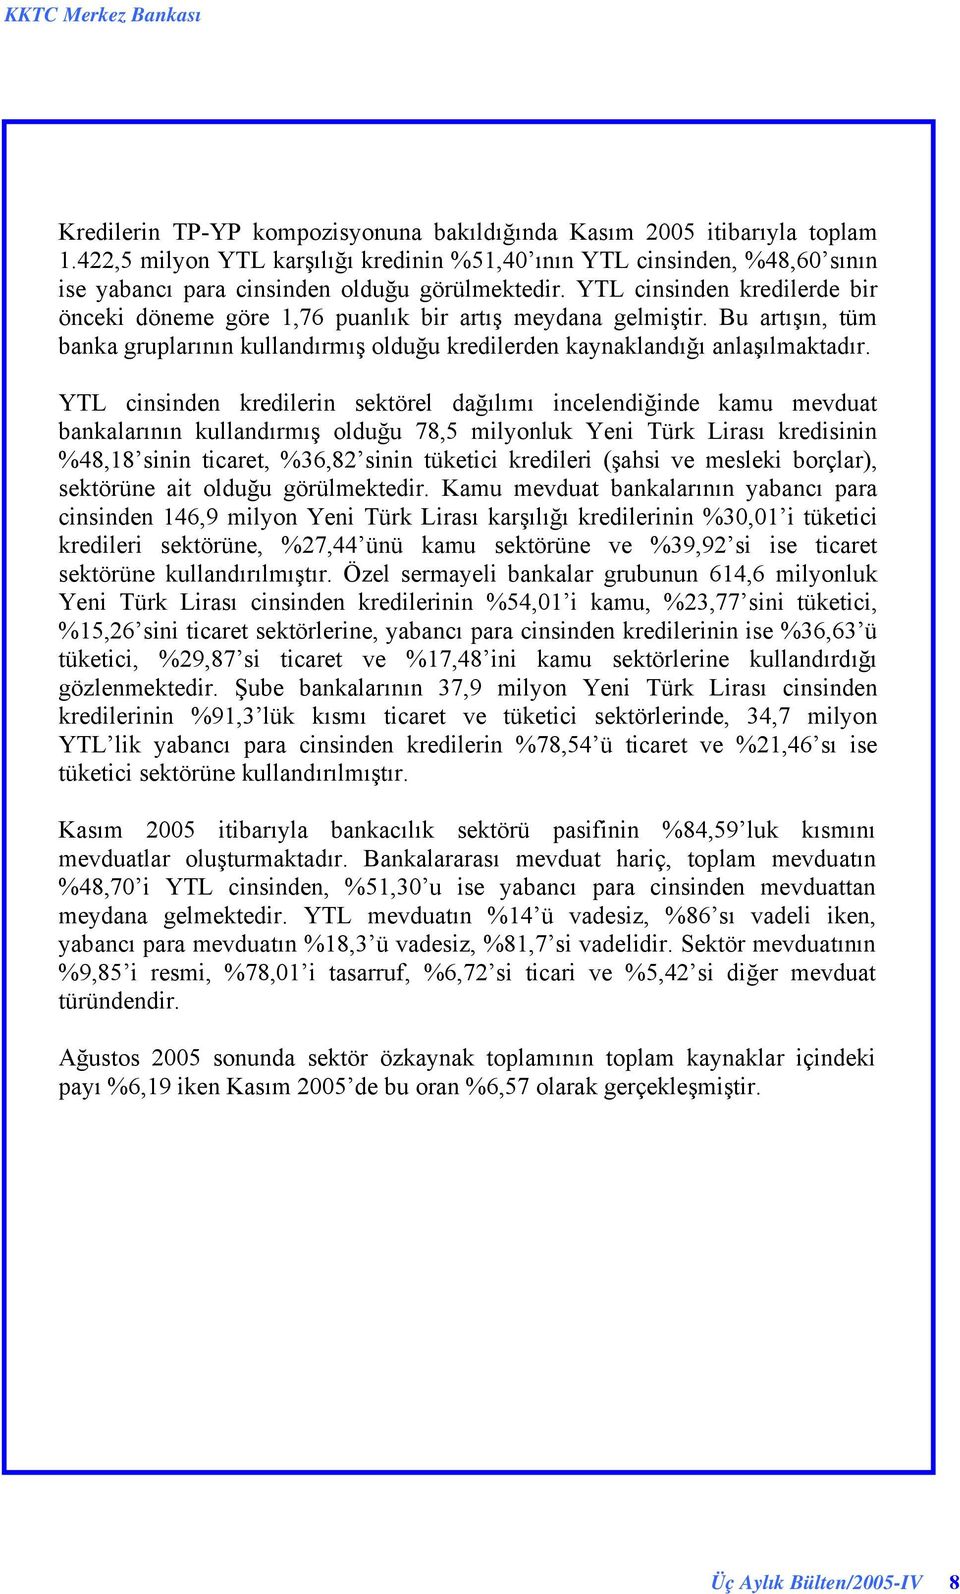 YTL cinsinden kredilerin sektörel dağılımı incelendiğinde kamu mevduat bankalarının kullandırmış olduğu 78,5 milyonluk Yeni Türk Lirası kredisinin 48,18 sinin ticaret, 36,82 sinin tüketici kredileri